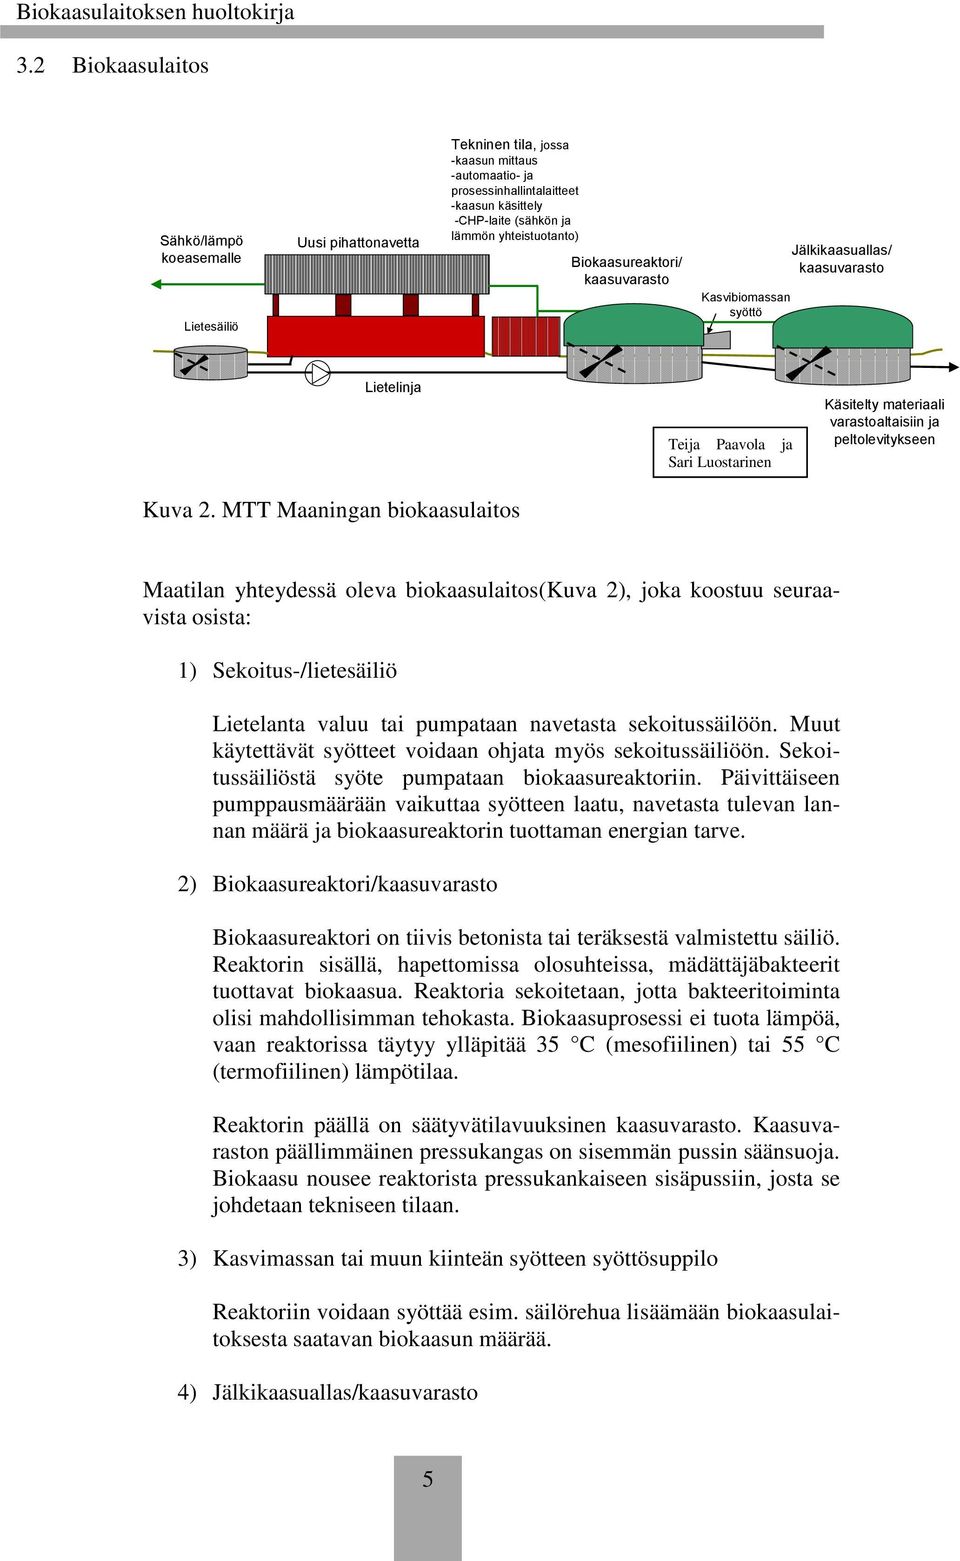 MTT Maaningan biokaasulaitos Teija Paavola ja Sari Luostarinen Käsitelty materiaali varastoaltaisiin ja peltolevitykseen Maatilan yhteydessä oleva biokaasulaitos(kuva 2), joka koostuu seuraavista